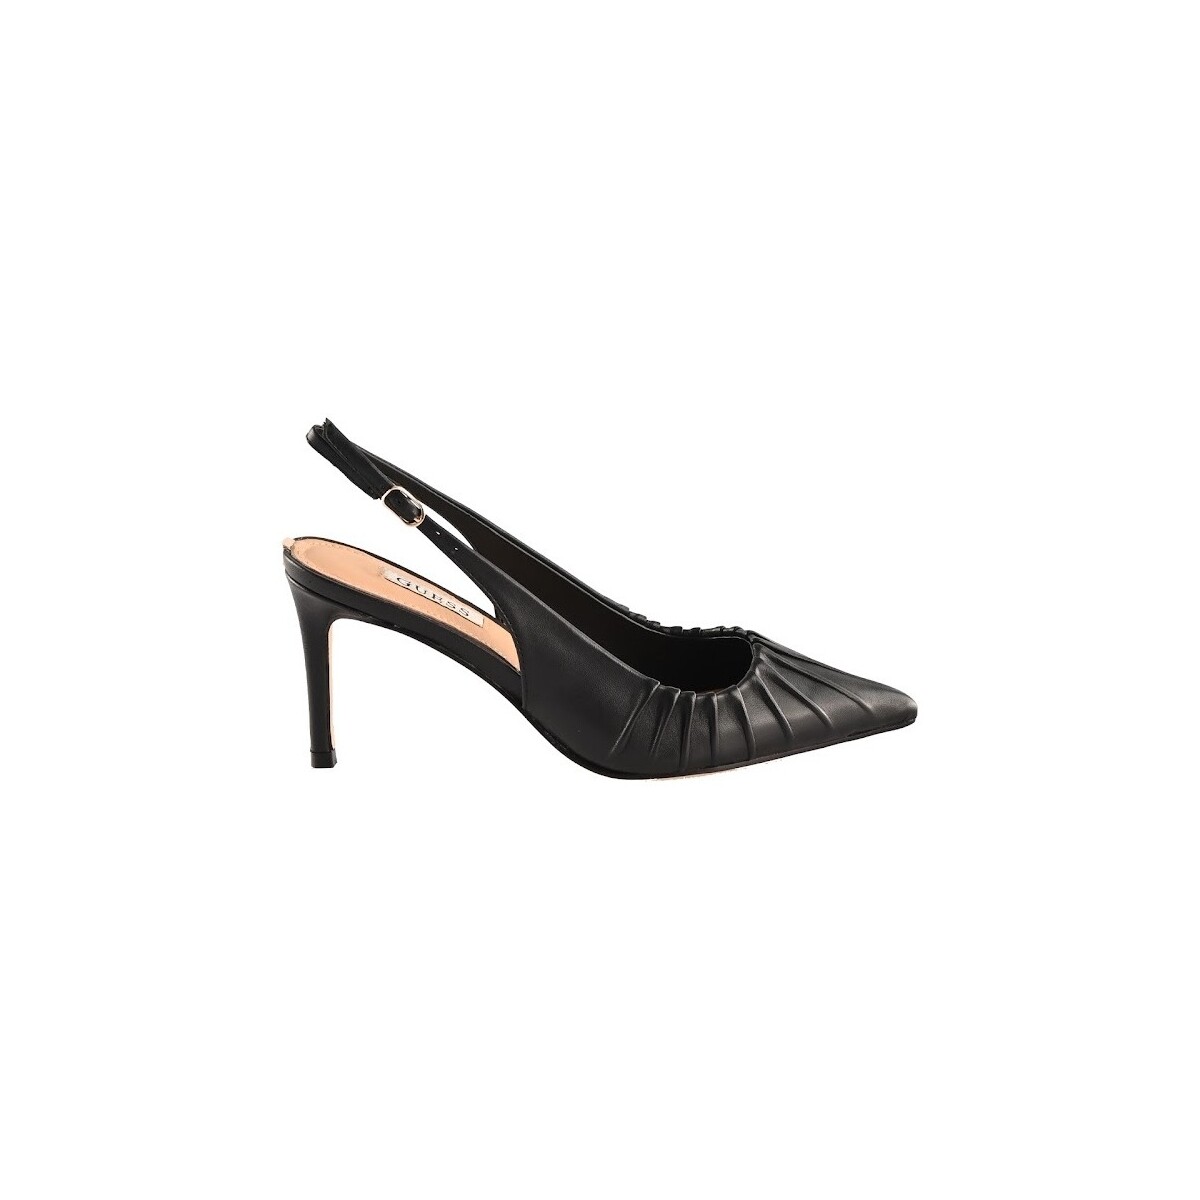 Chaussures Femme Sandales et Nu-pieds Guess 176066-274189 Noir